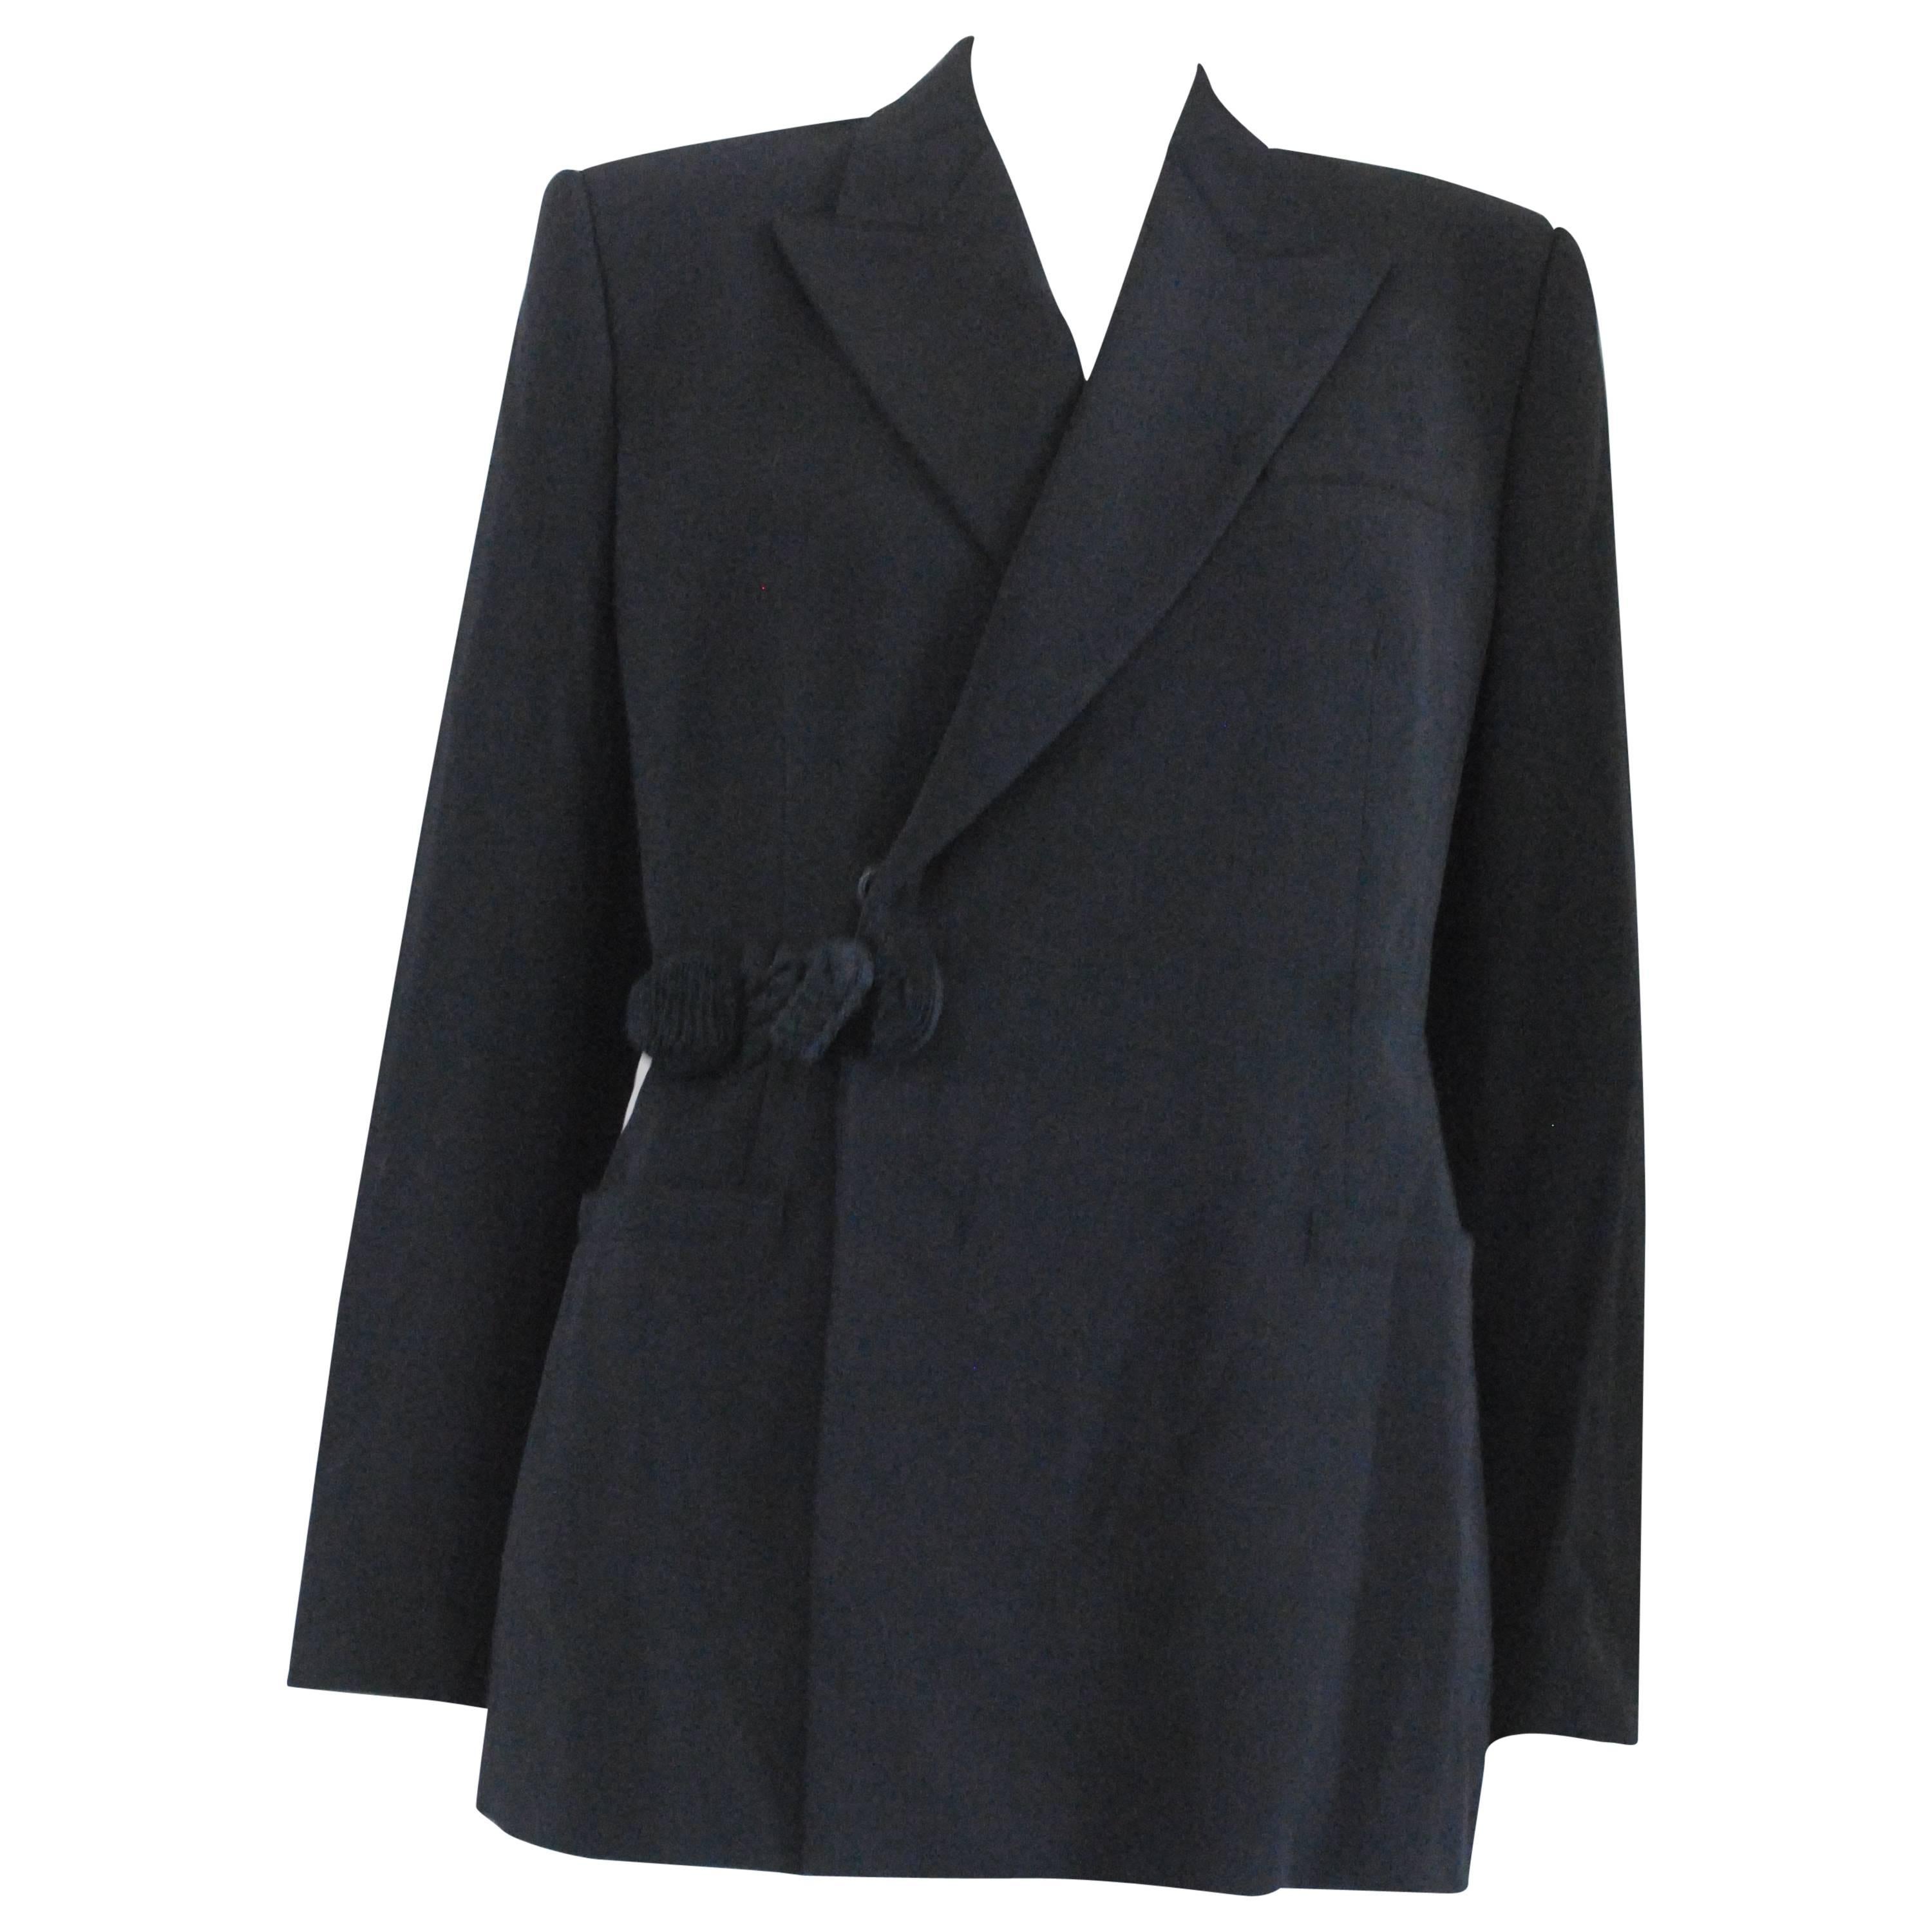 1997 - 1998 Rare Jean Paul Gaultier Black Wool Jacket